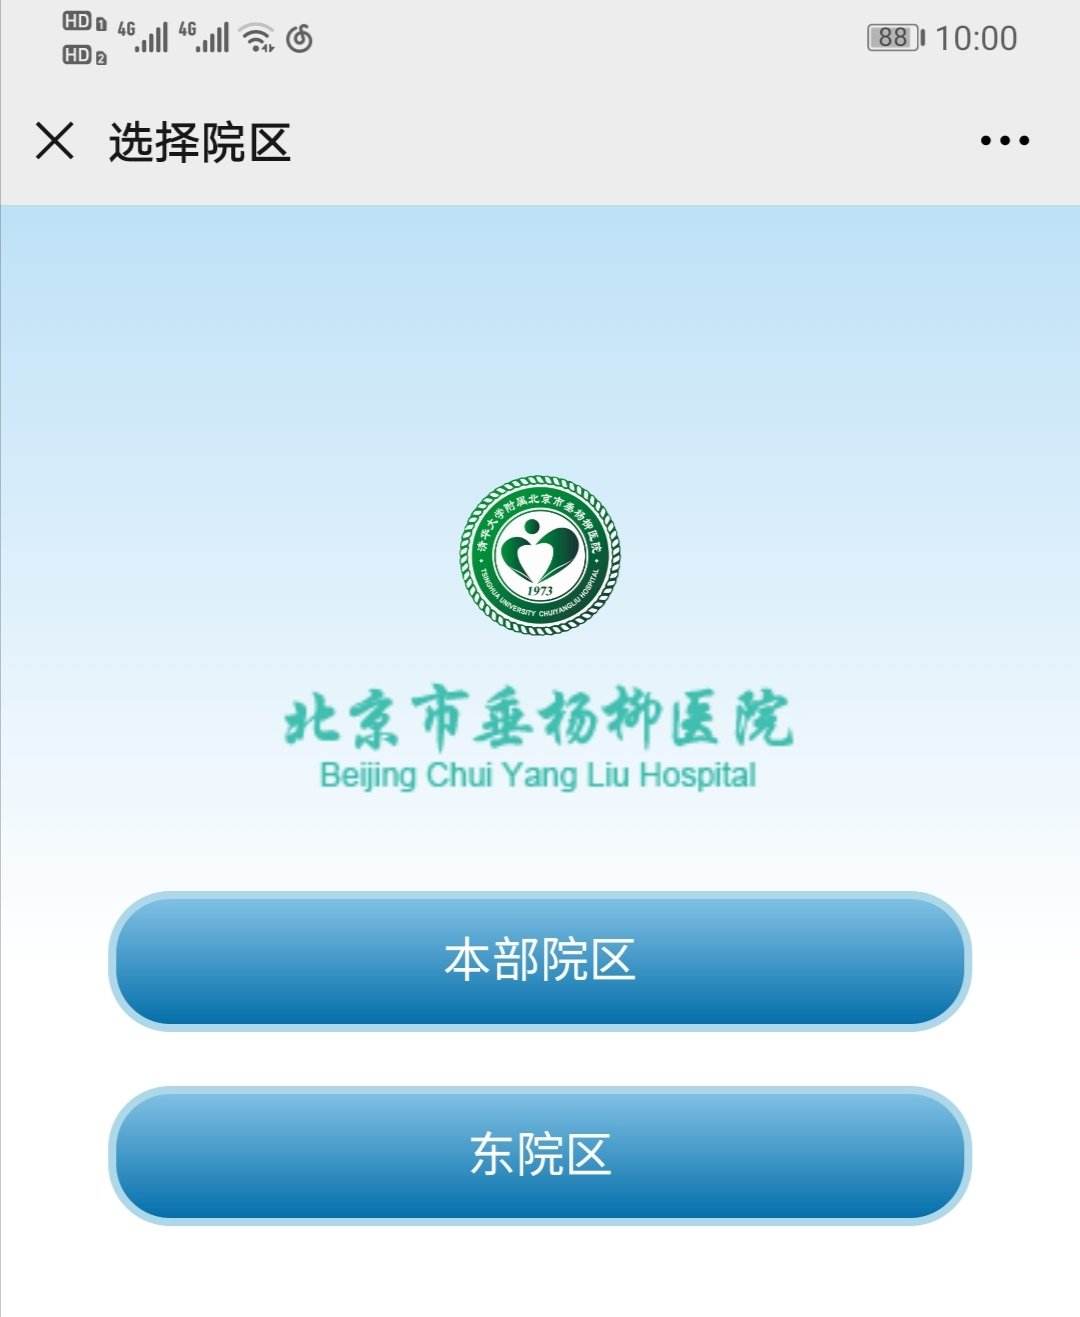 包含北京市垂杨柳医院贩子挂号,实测可靠很感激!联系方式哪家强